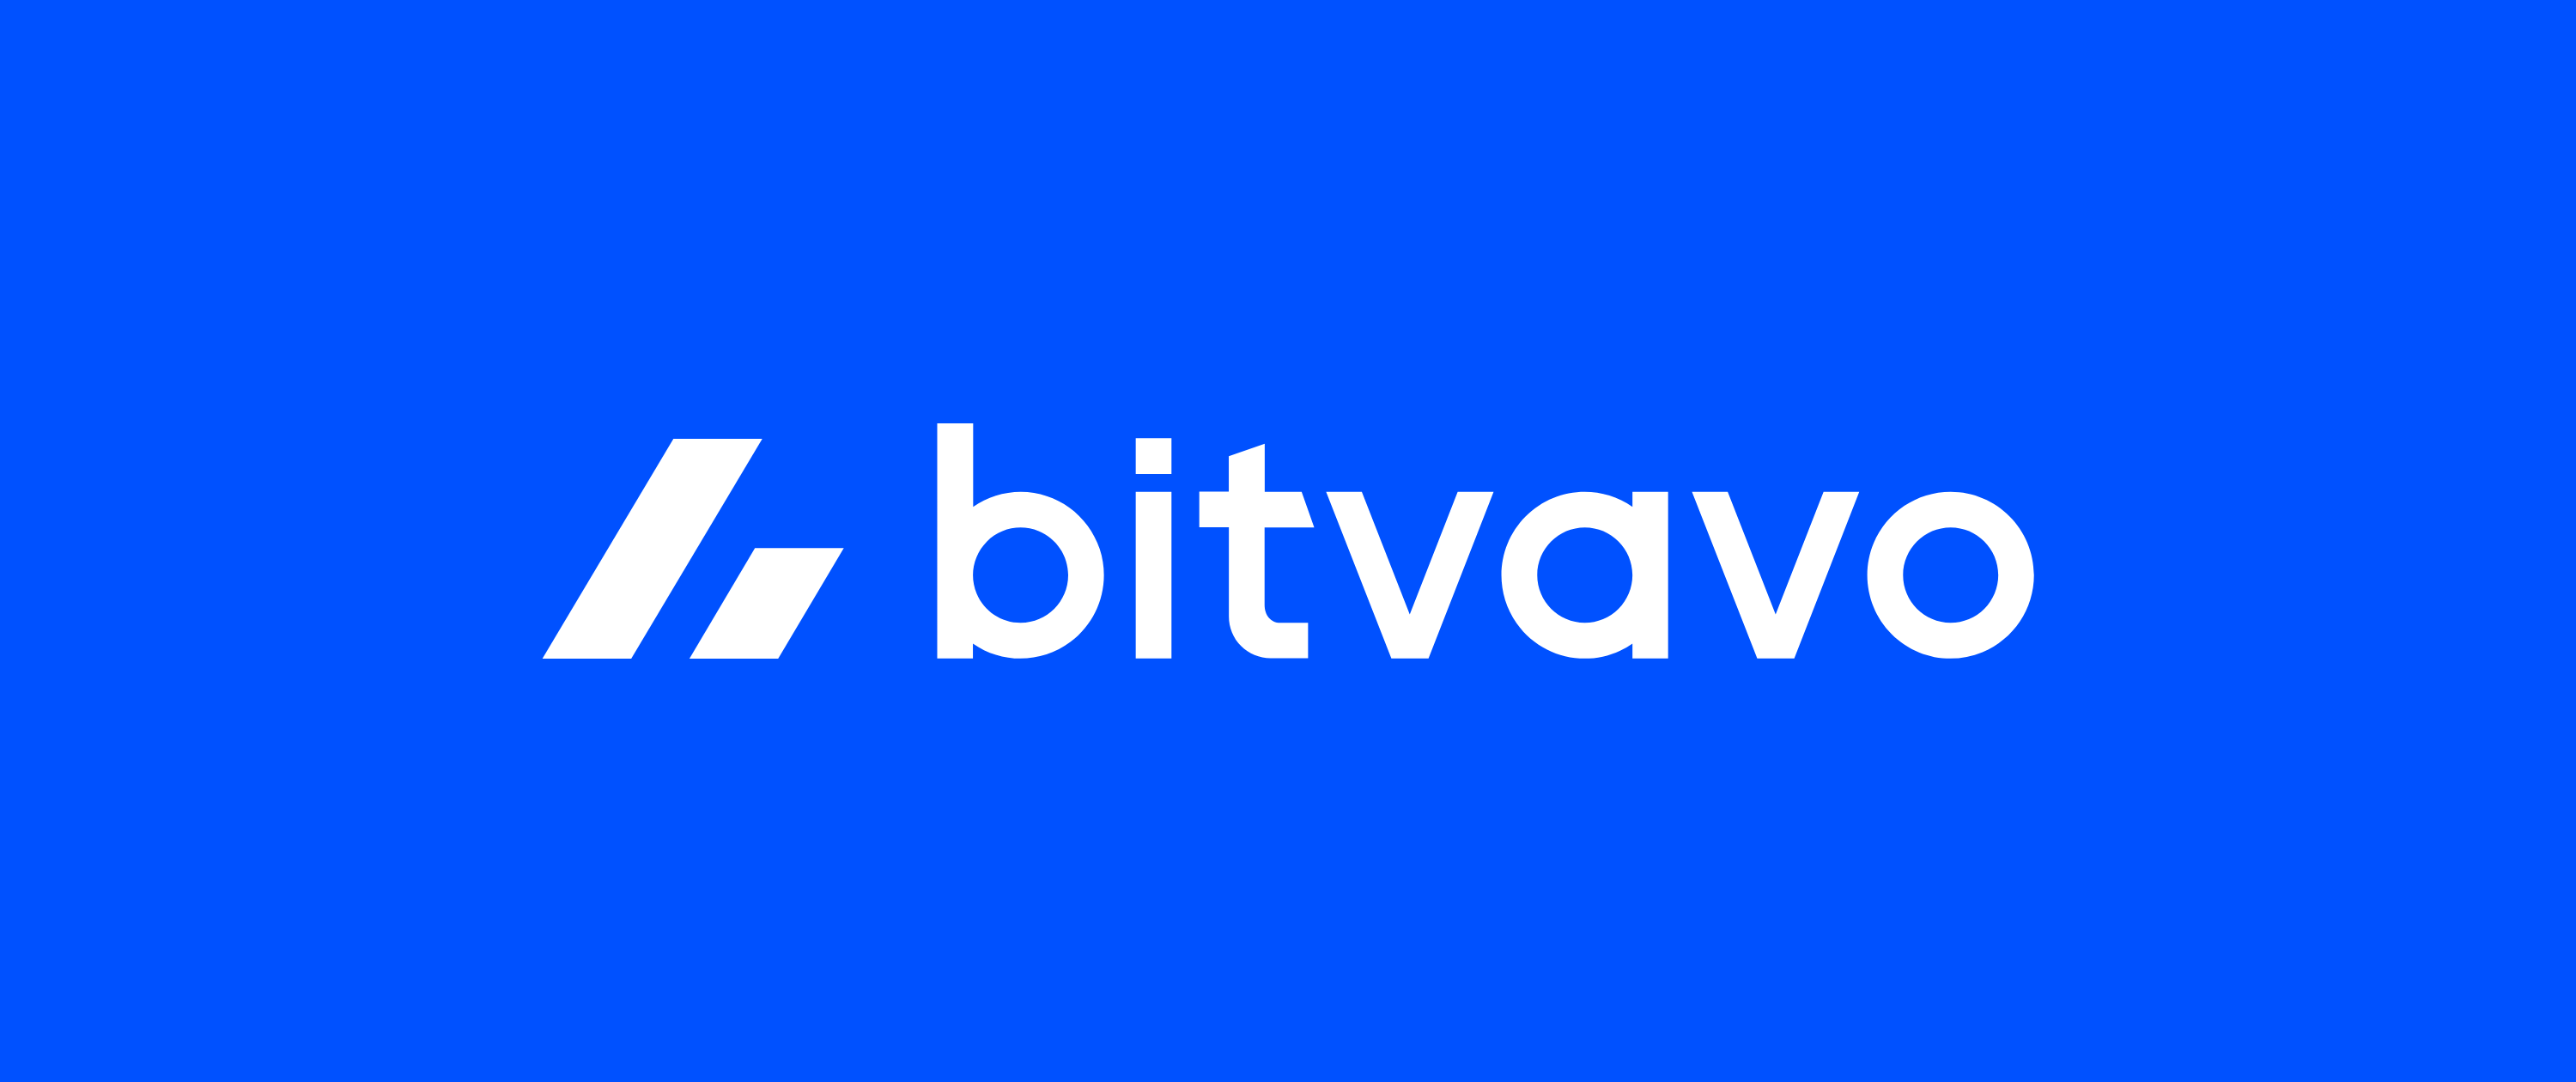 Bitvavo kündigt Einstellung des Service für deutsche Kunden an: Was nun zu tun ist